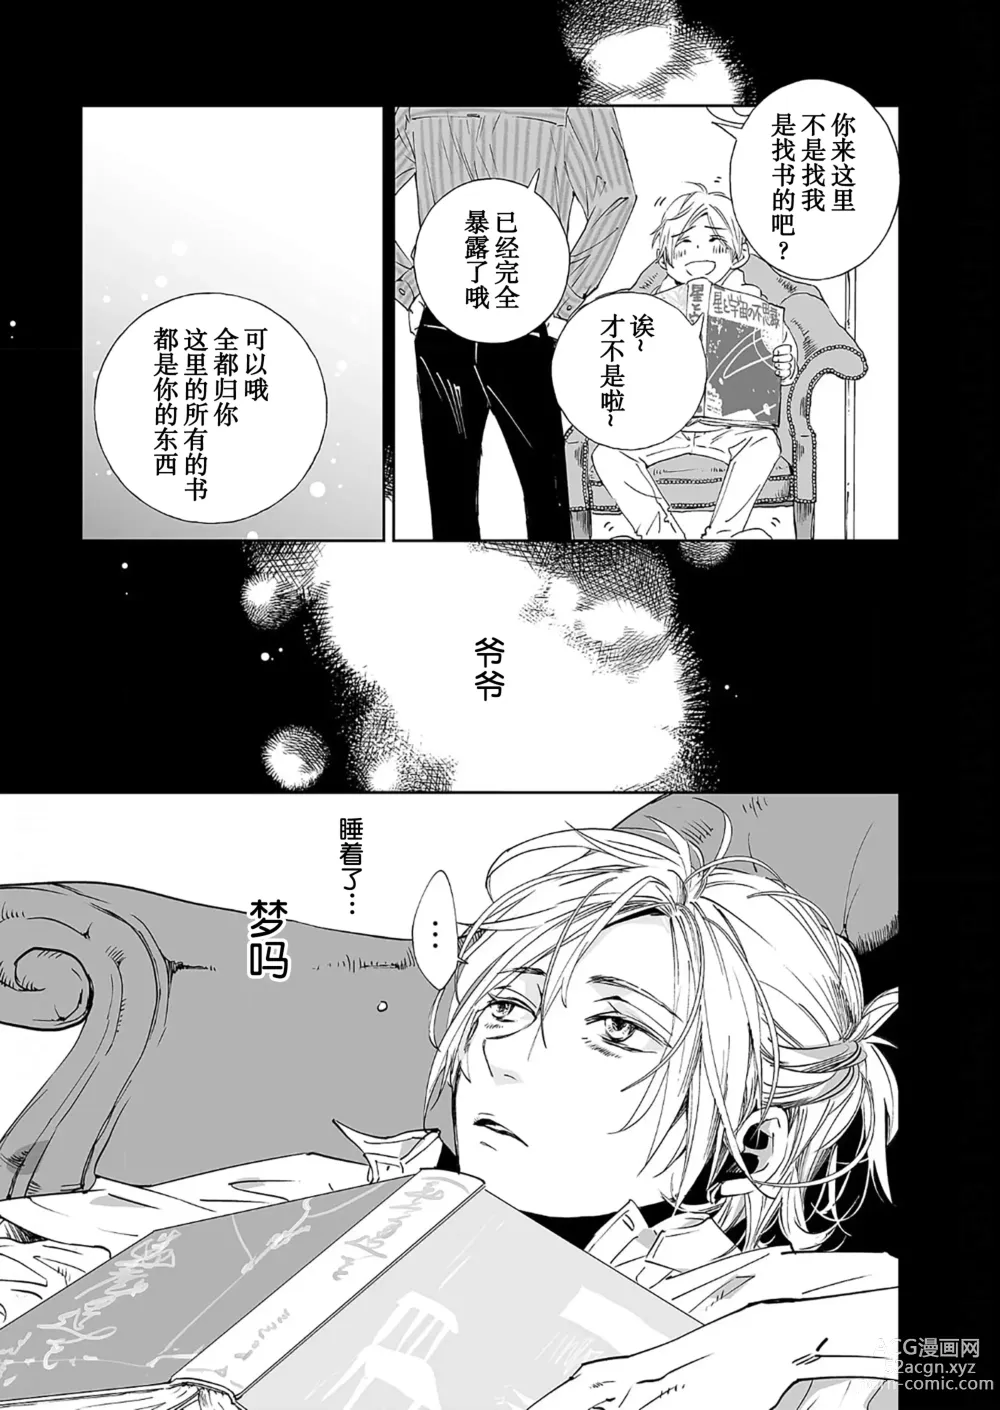 Page 21 of manga 情至小南家